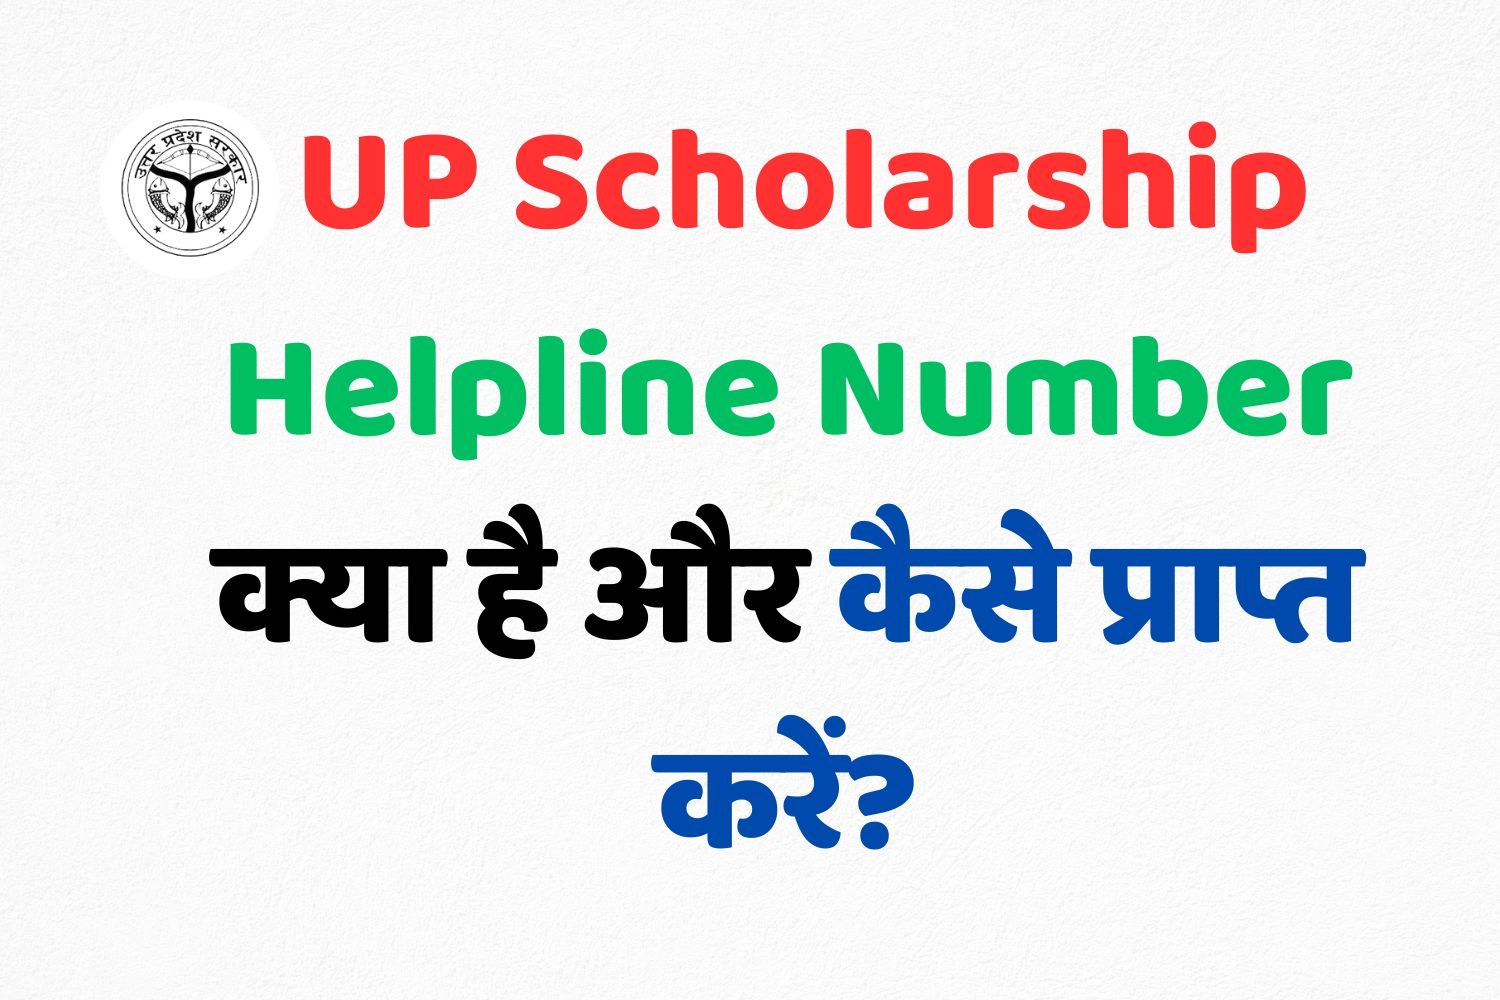 UP Scholarship Helpline Number क्या है? और कैसे प्राप्त करें?